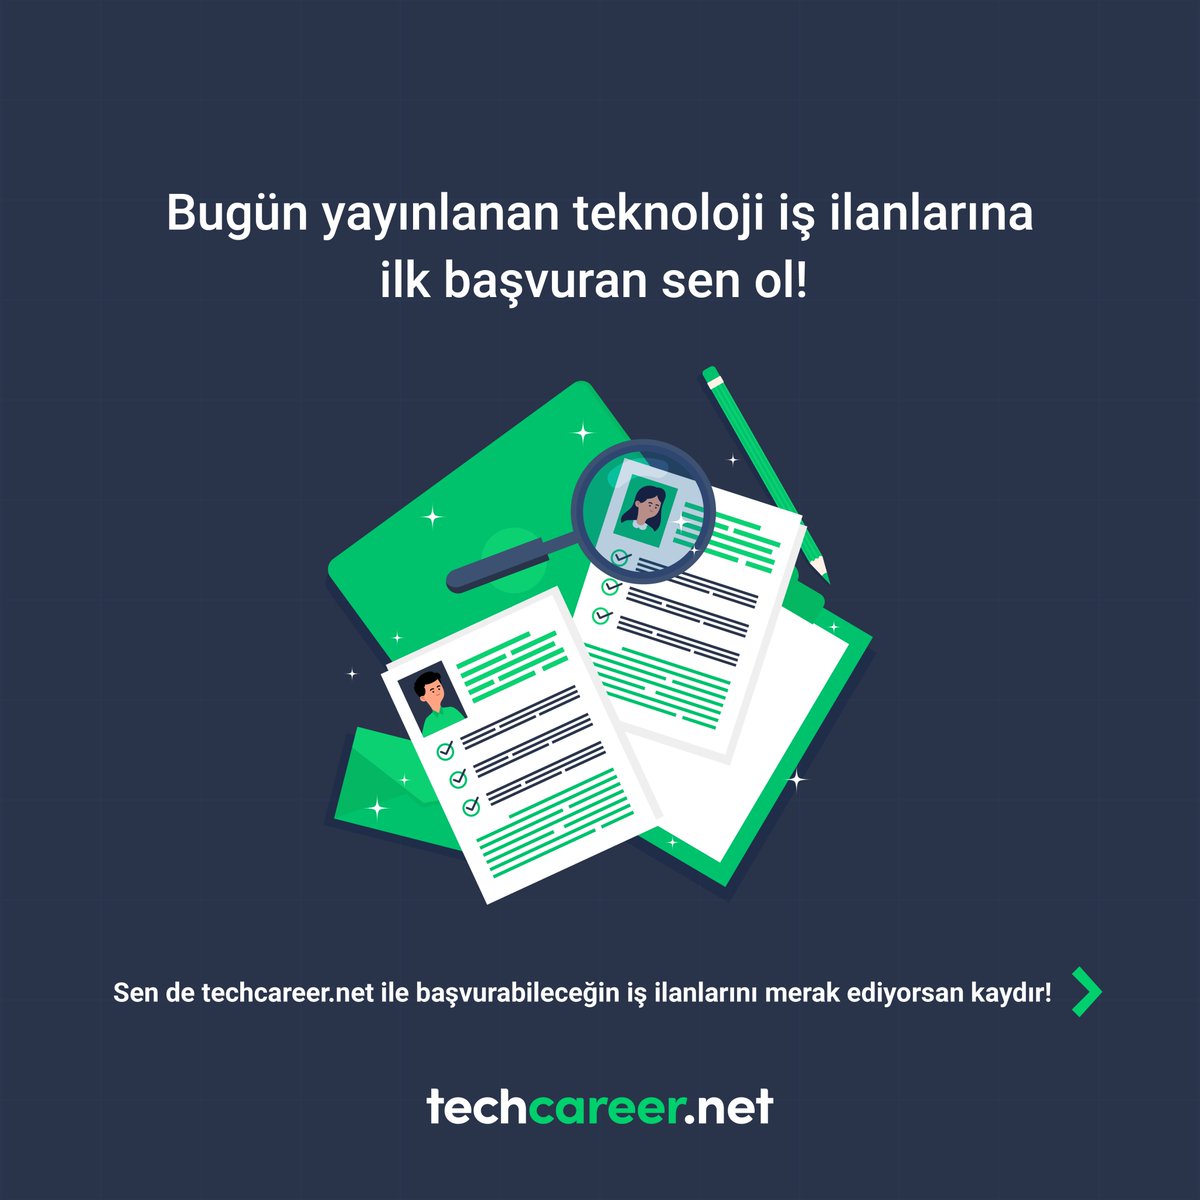 Teknoloji iş ilanları sizi bekliyor! 🚀 Başvuru yapmak için link 👉go.techcareer.net/RQOoNV Teknoloji ilanlarını senin için bir araya getirdik. Hemen gel, ilanlara göz at, kariyerini bir adım öteye taşı! 👩🏻‍💻👨🏼‍💻